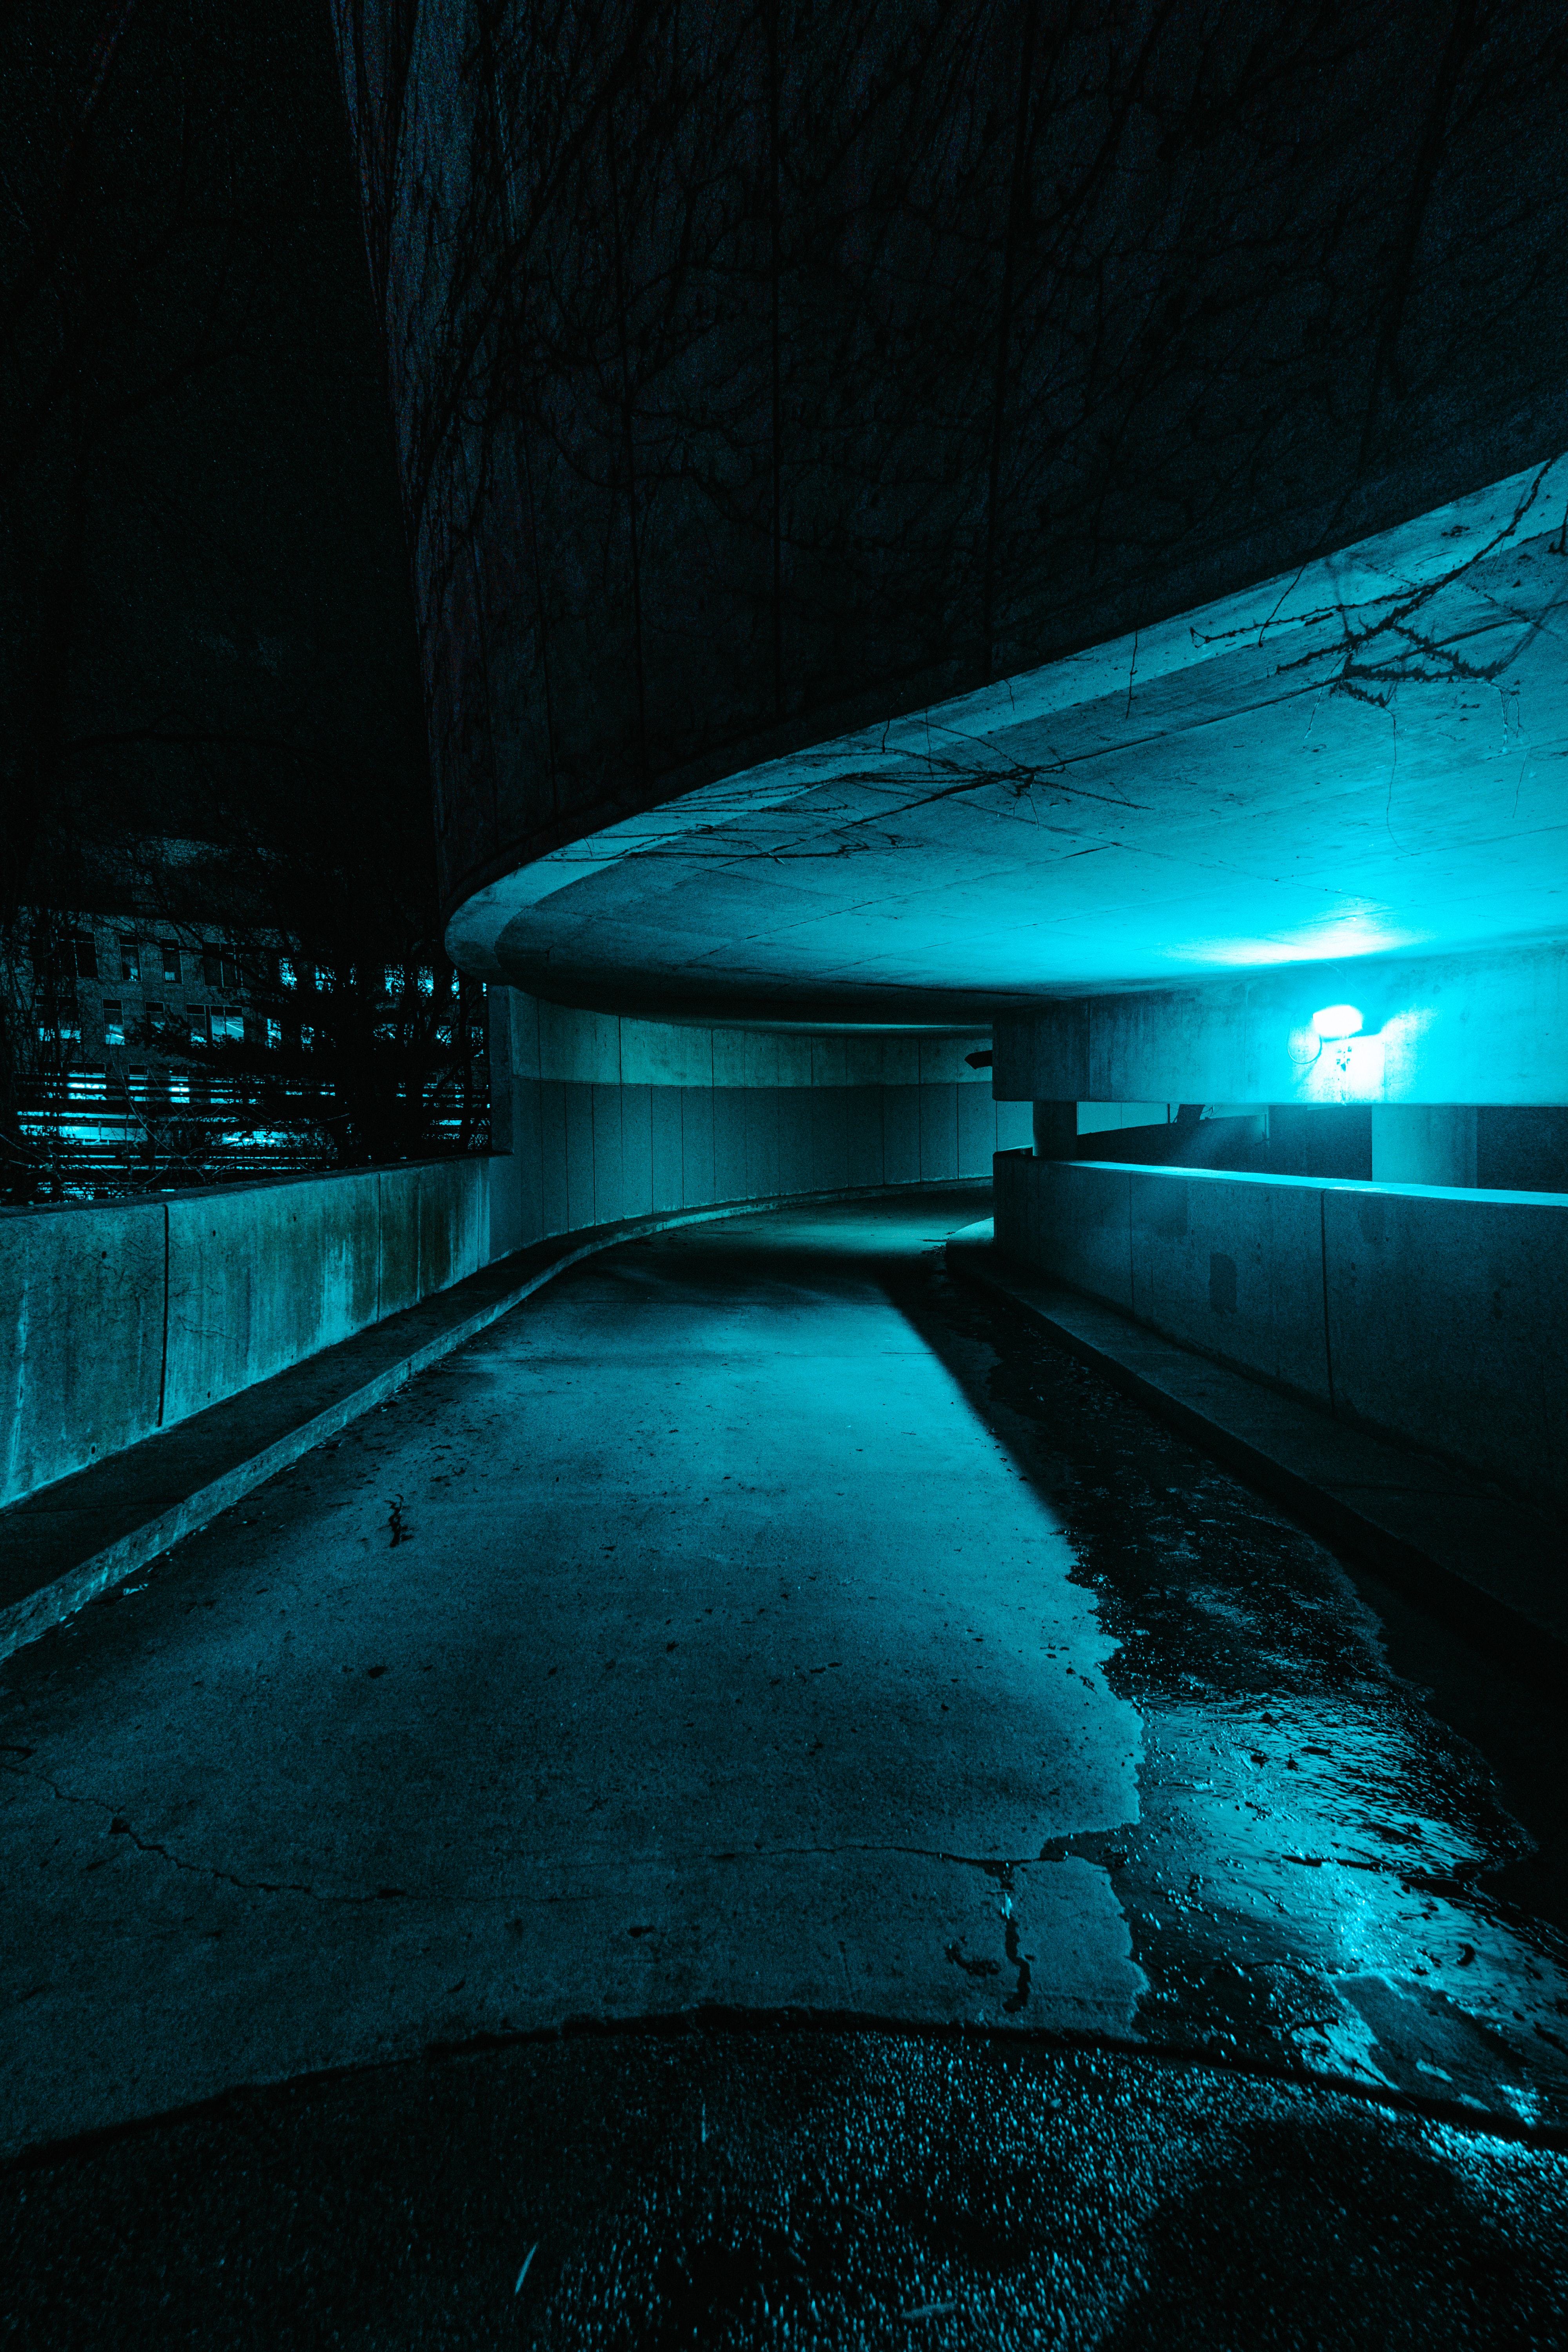 android tunnel, dark, road, turn, illumination, lighting